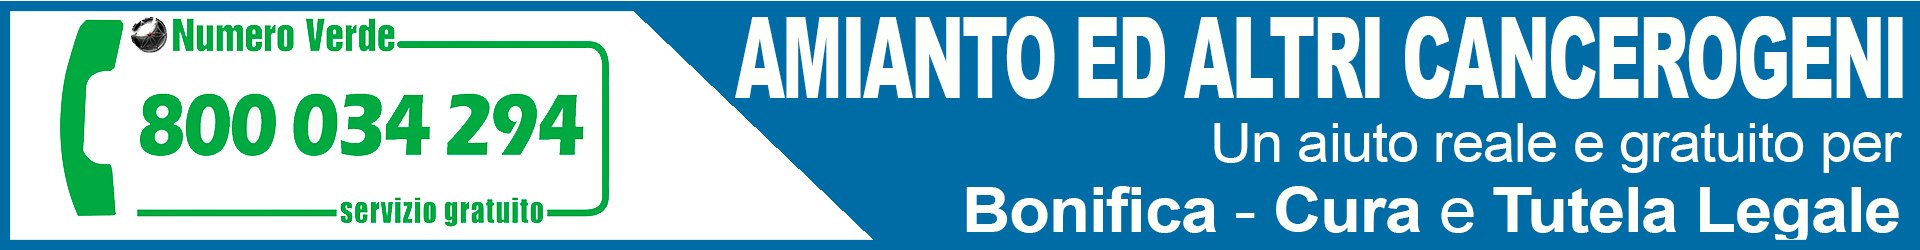 Osservatorio Nazionale Amianto Campania